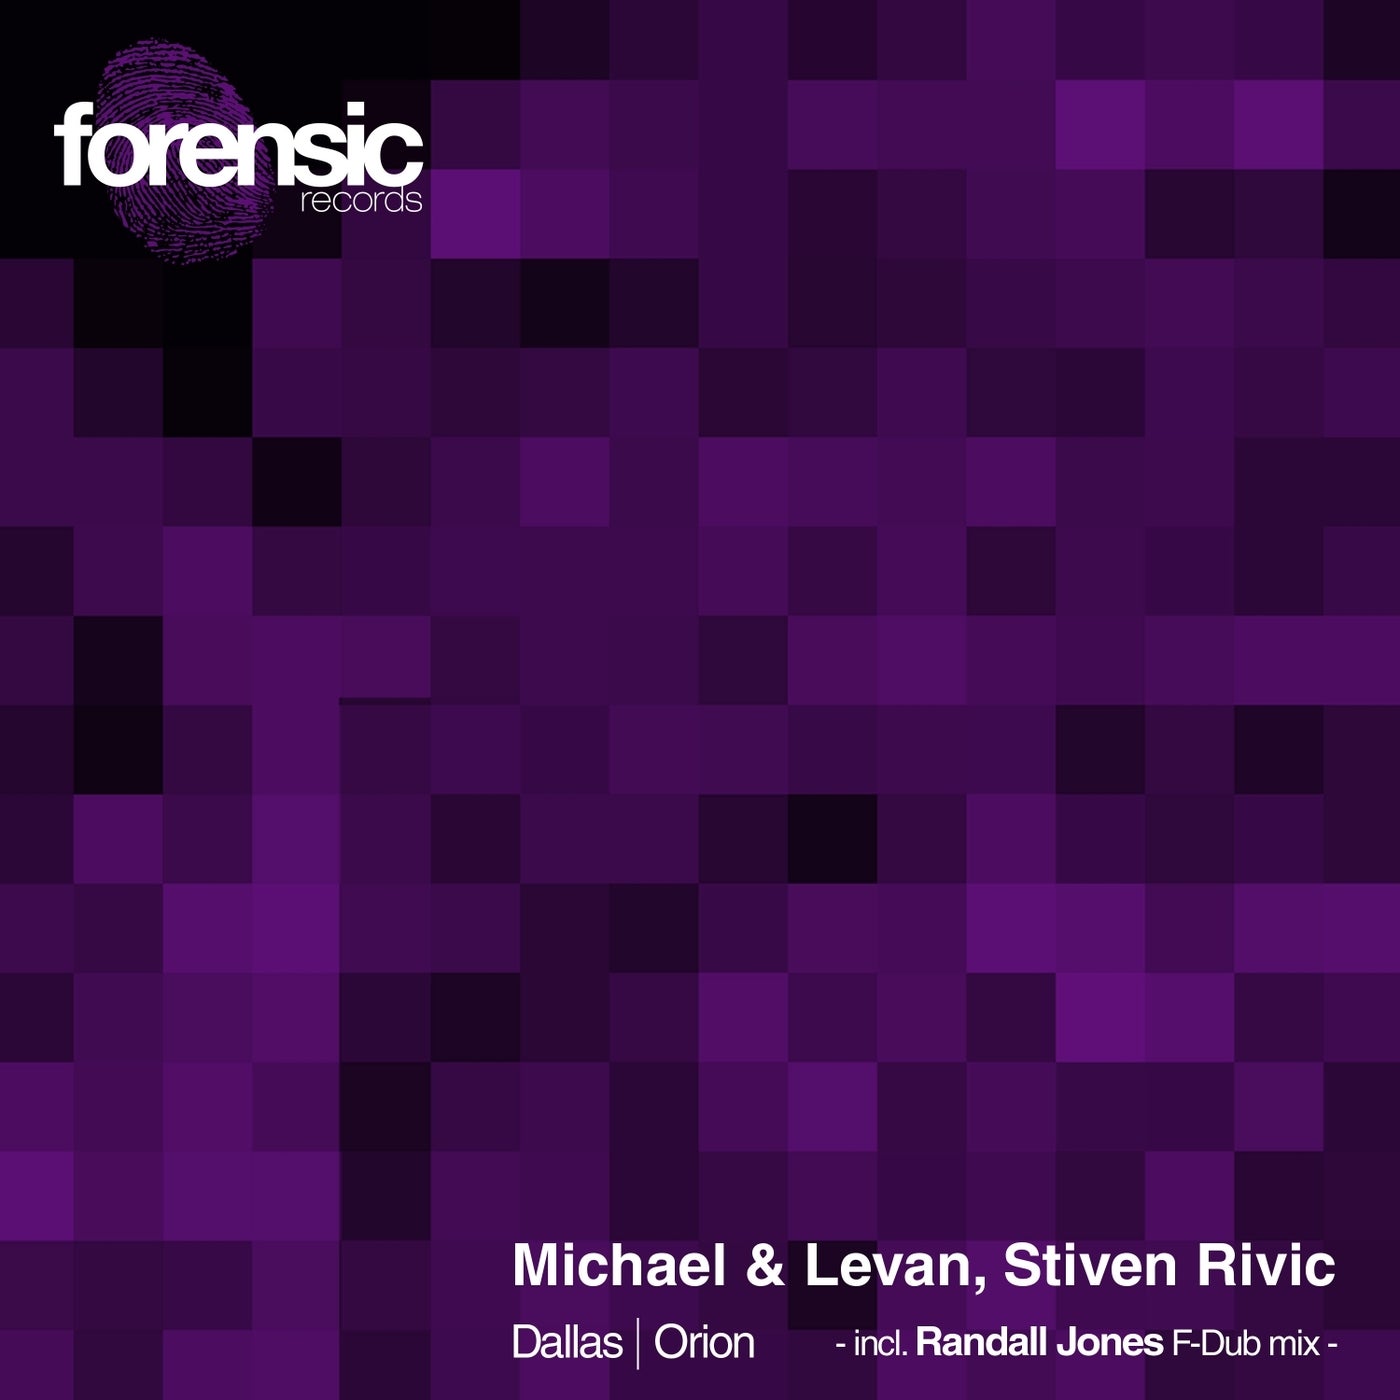 Michael & Levan & Stiven Rivic - Dallas - Orion [FOR2005]